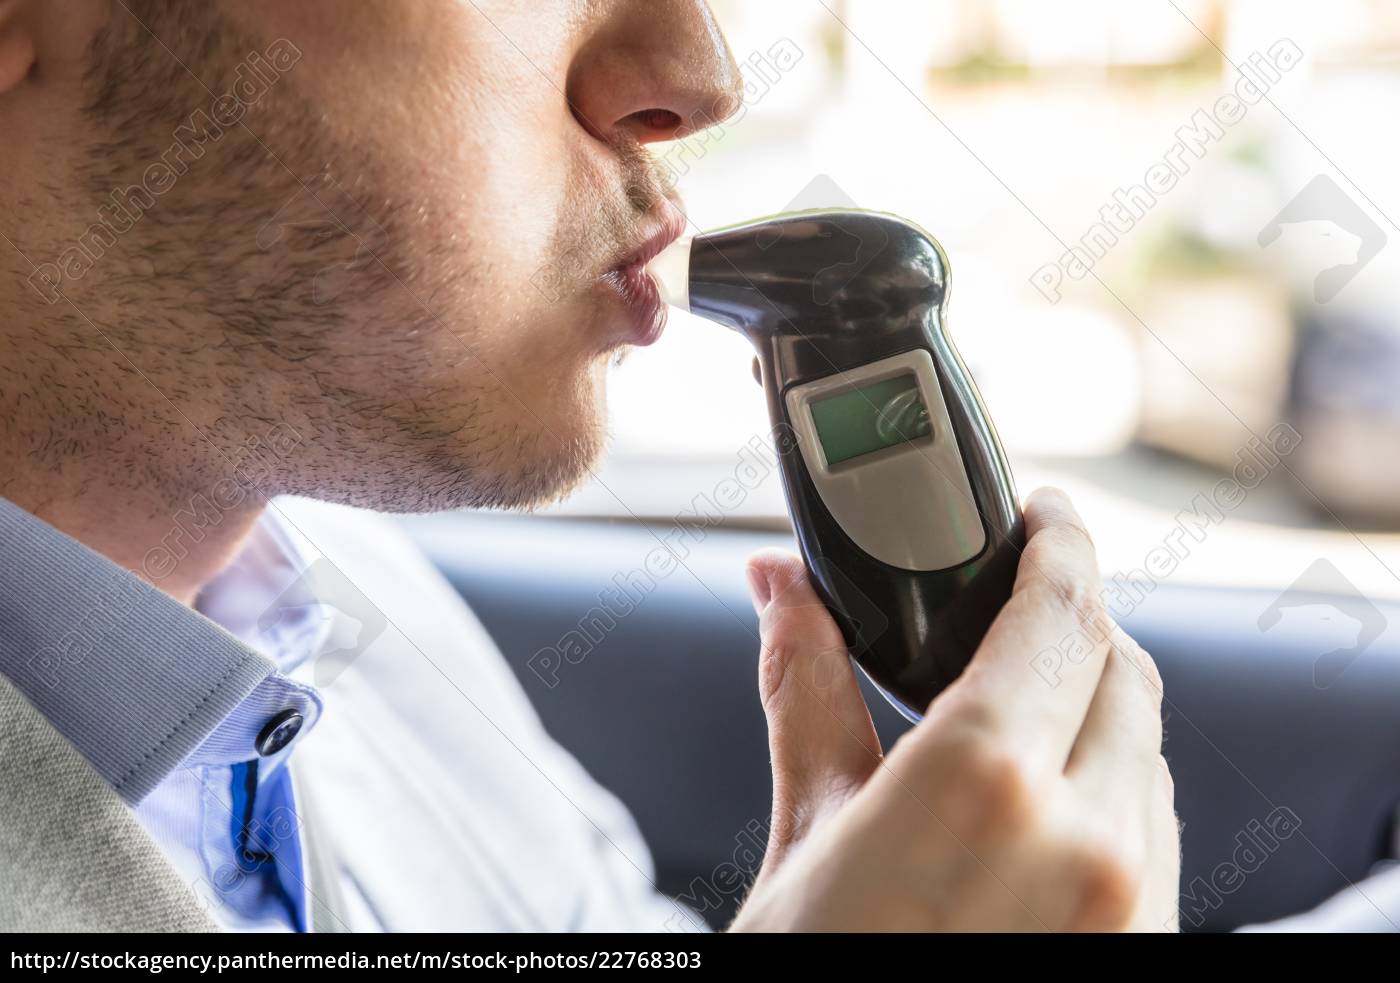 mann sitzt im auto unter alkoholtest - Lizenzfreies Bild #22768303